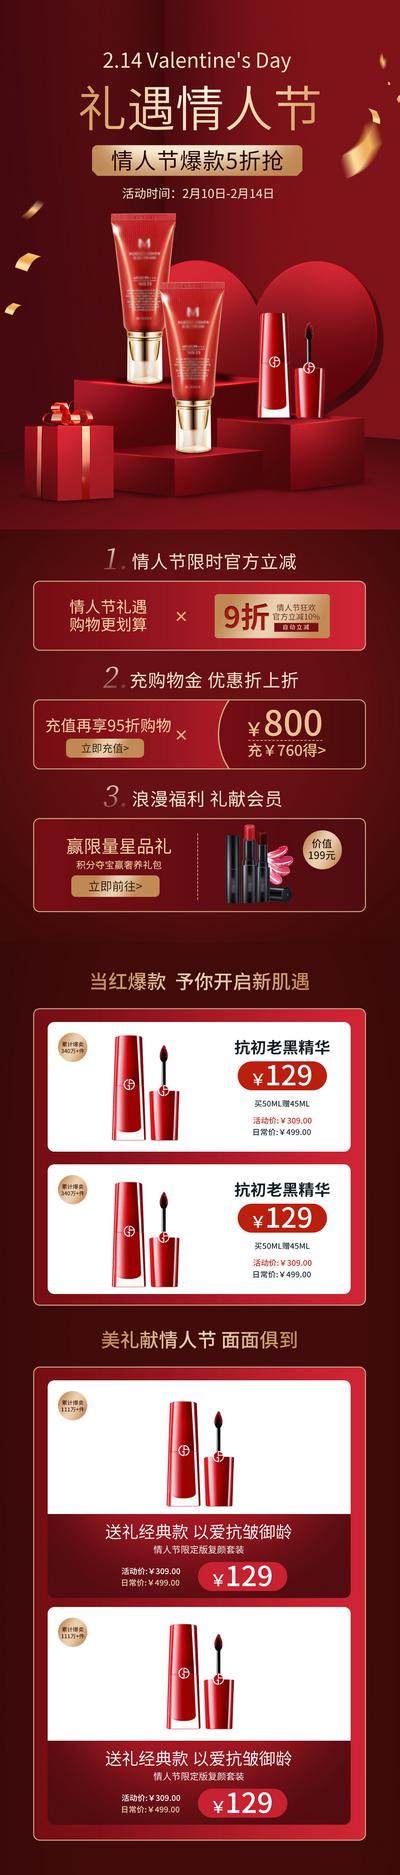 南门网 广告 海报 电商 化妆品 美妆 情人节 详情页 专题